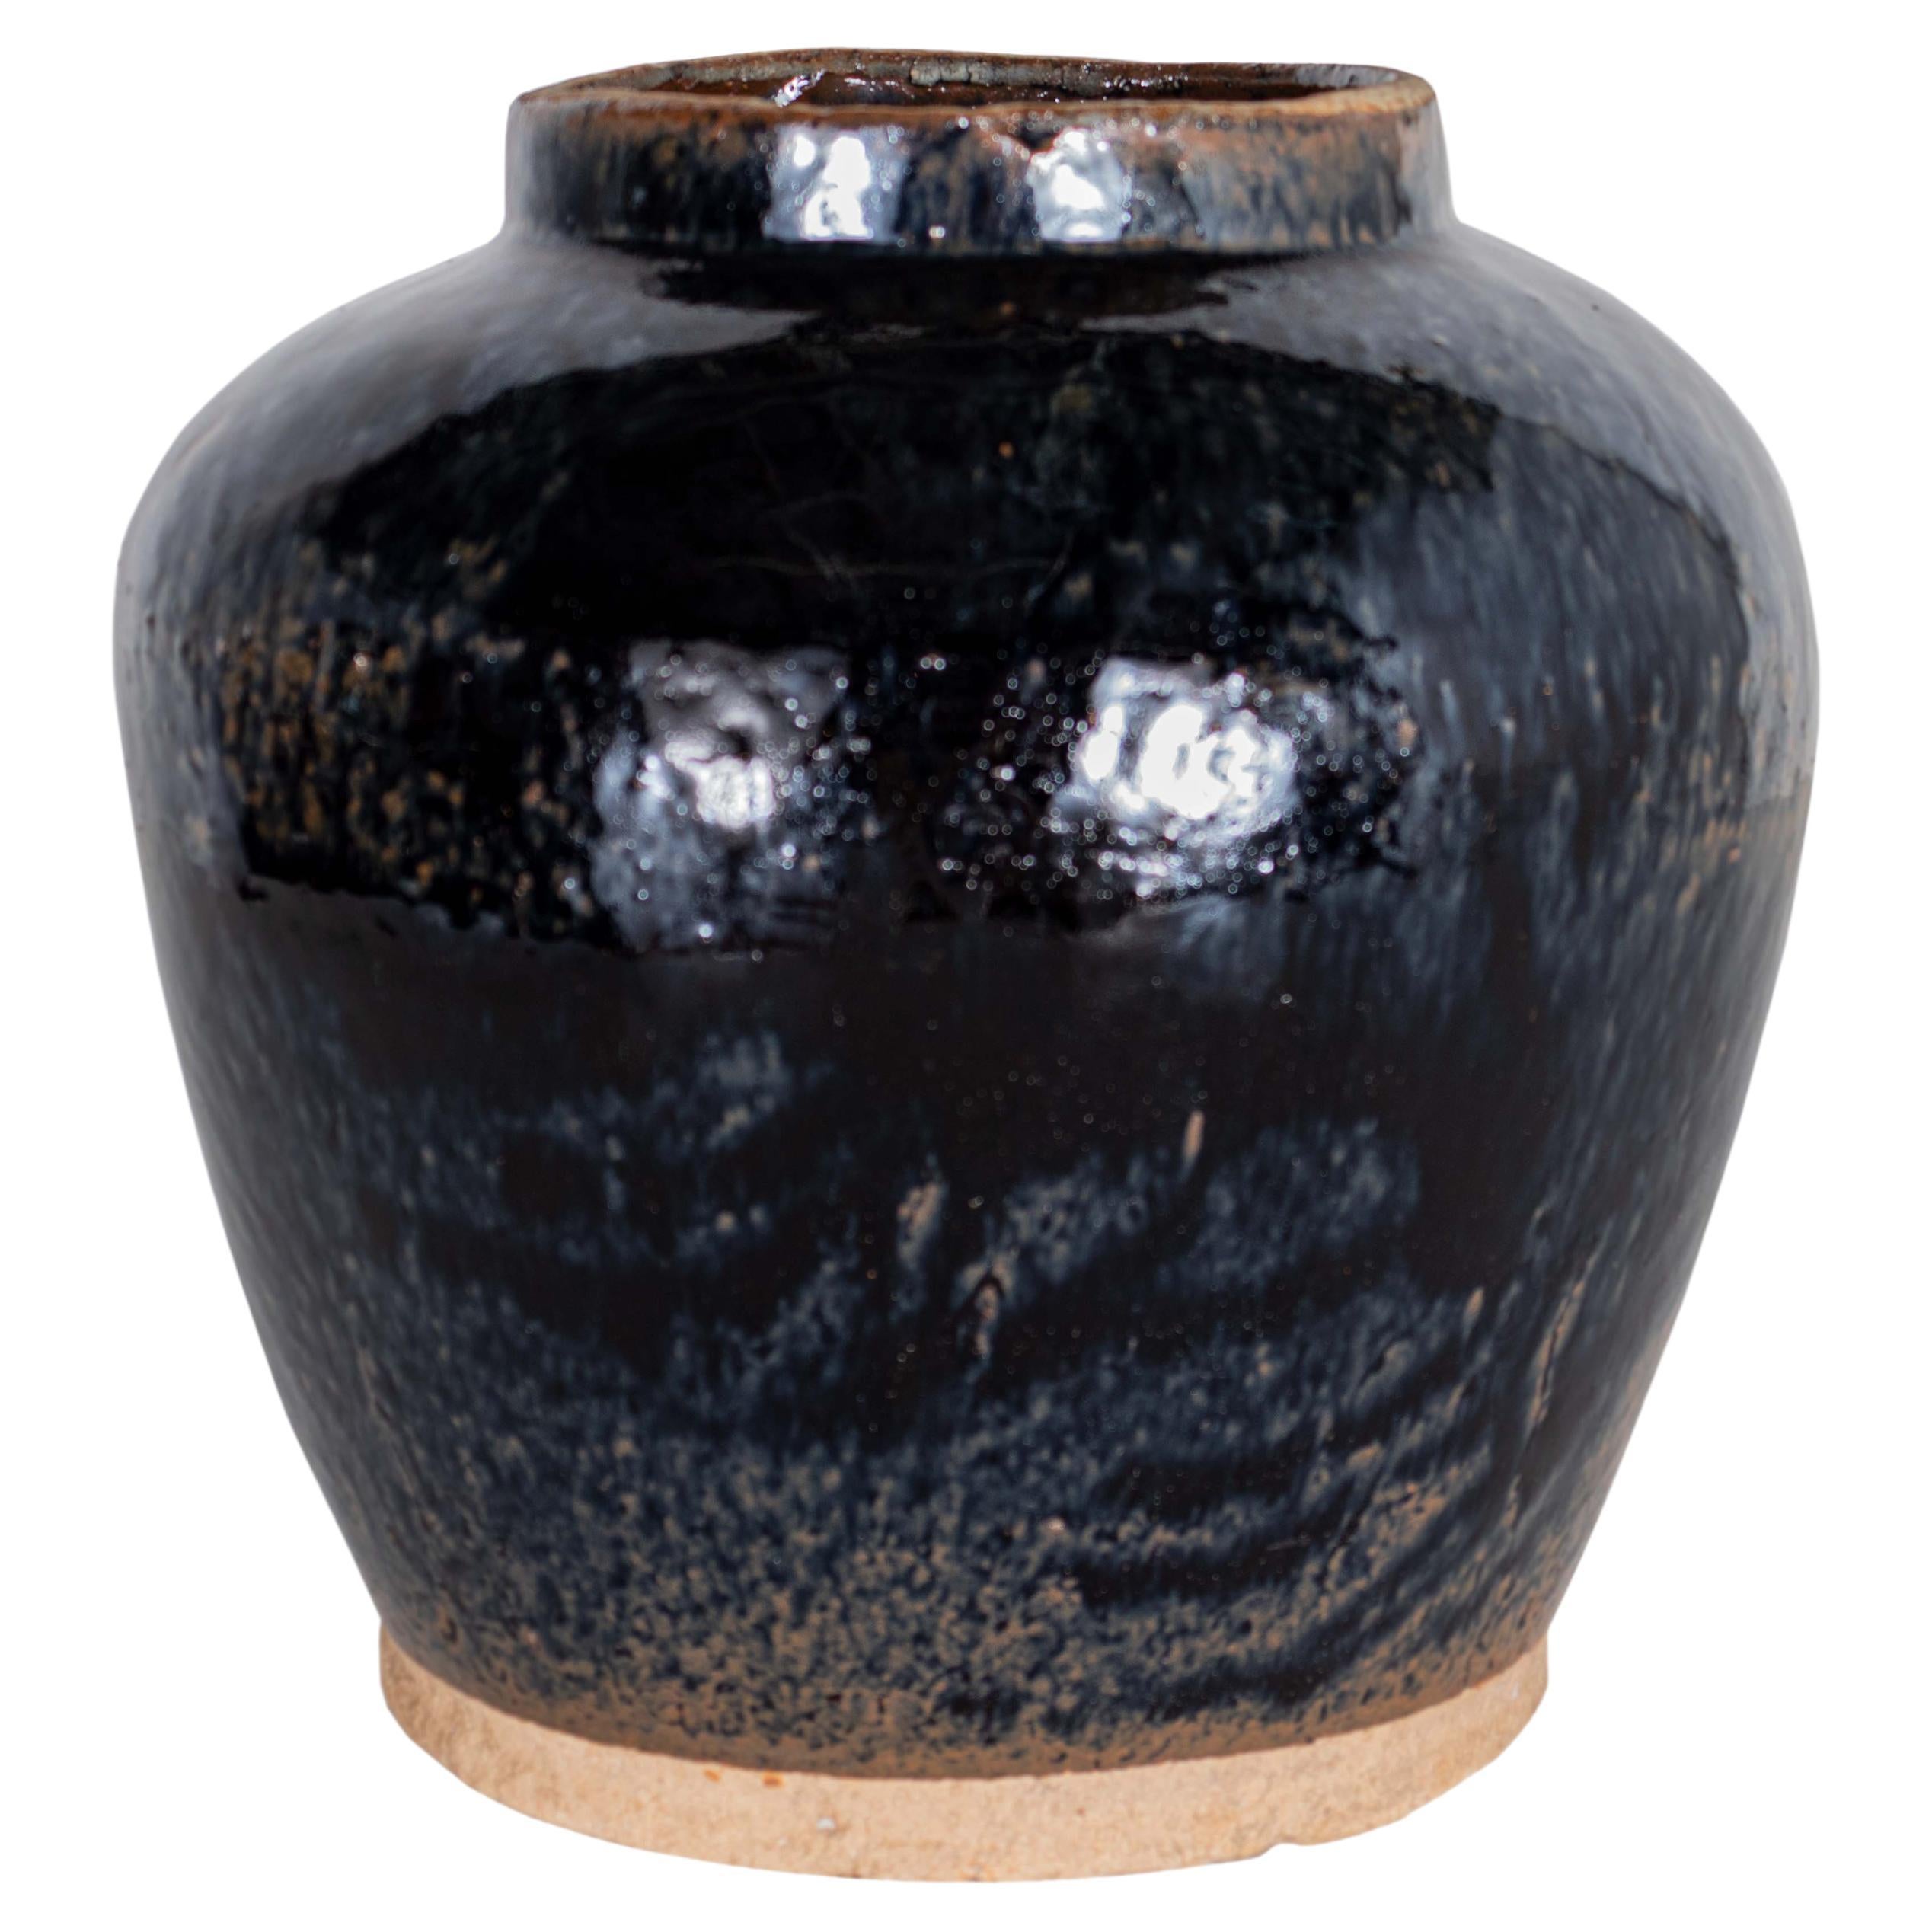 Ceramic Glazed Storage Jar